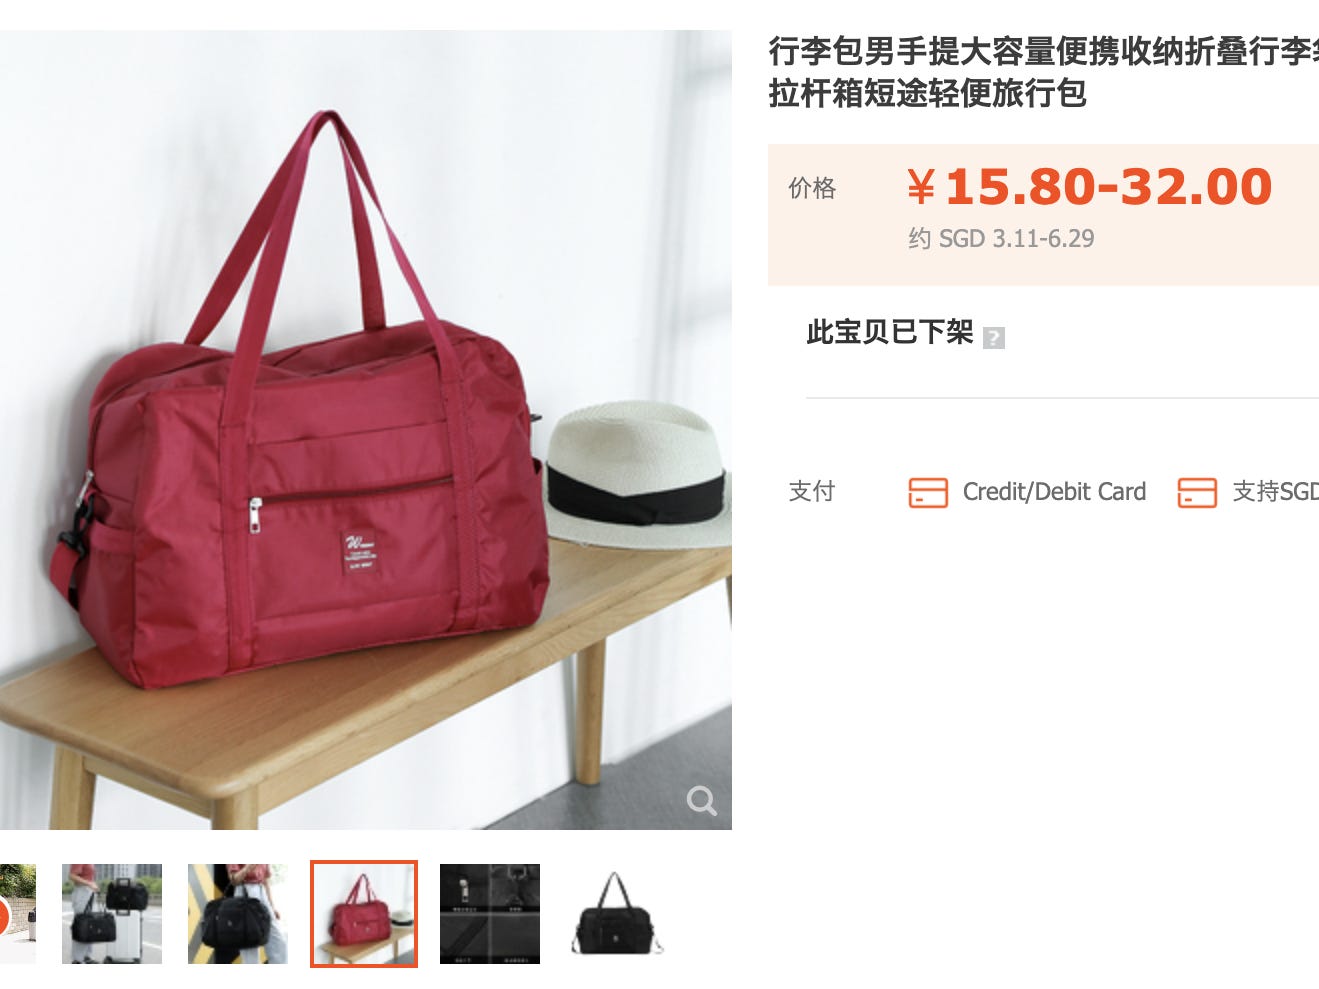 Eine Einkaufstasche von Taobao.